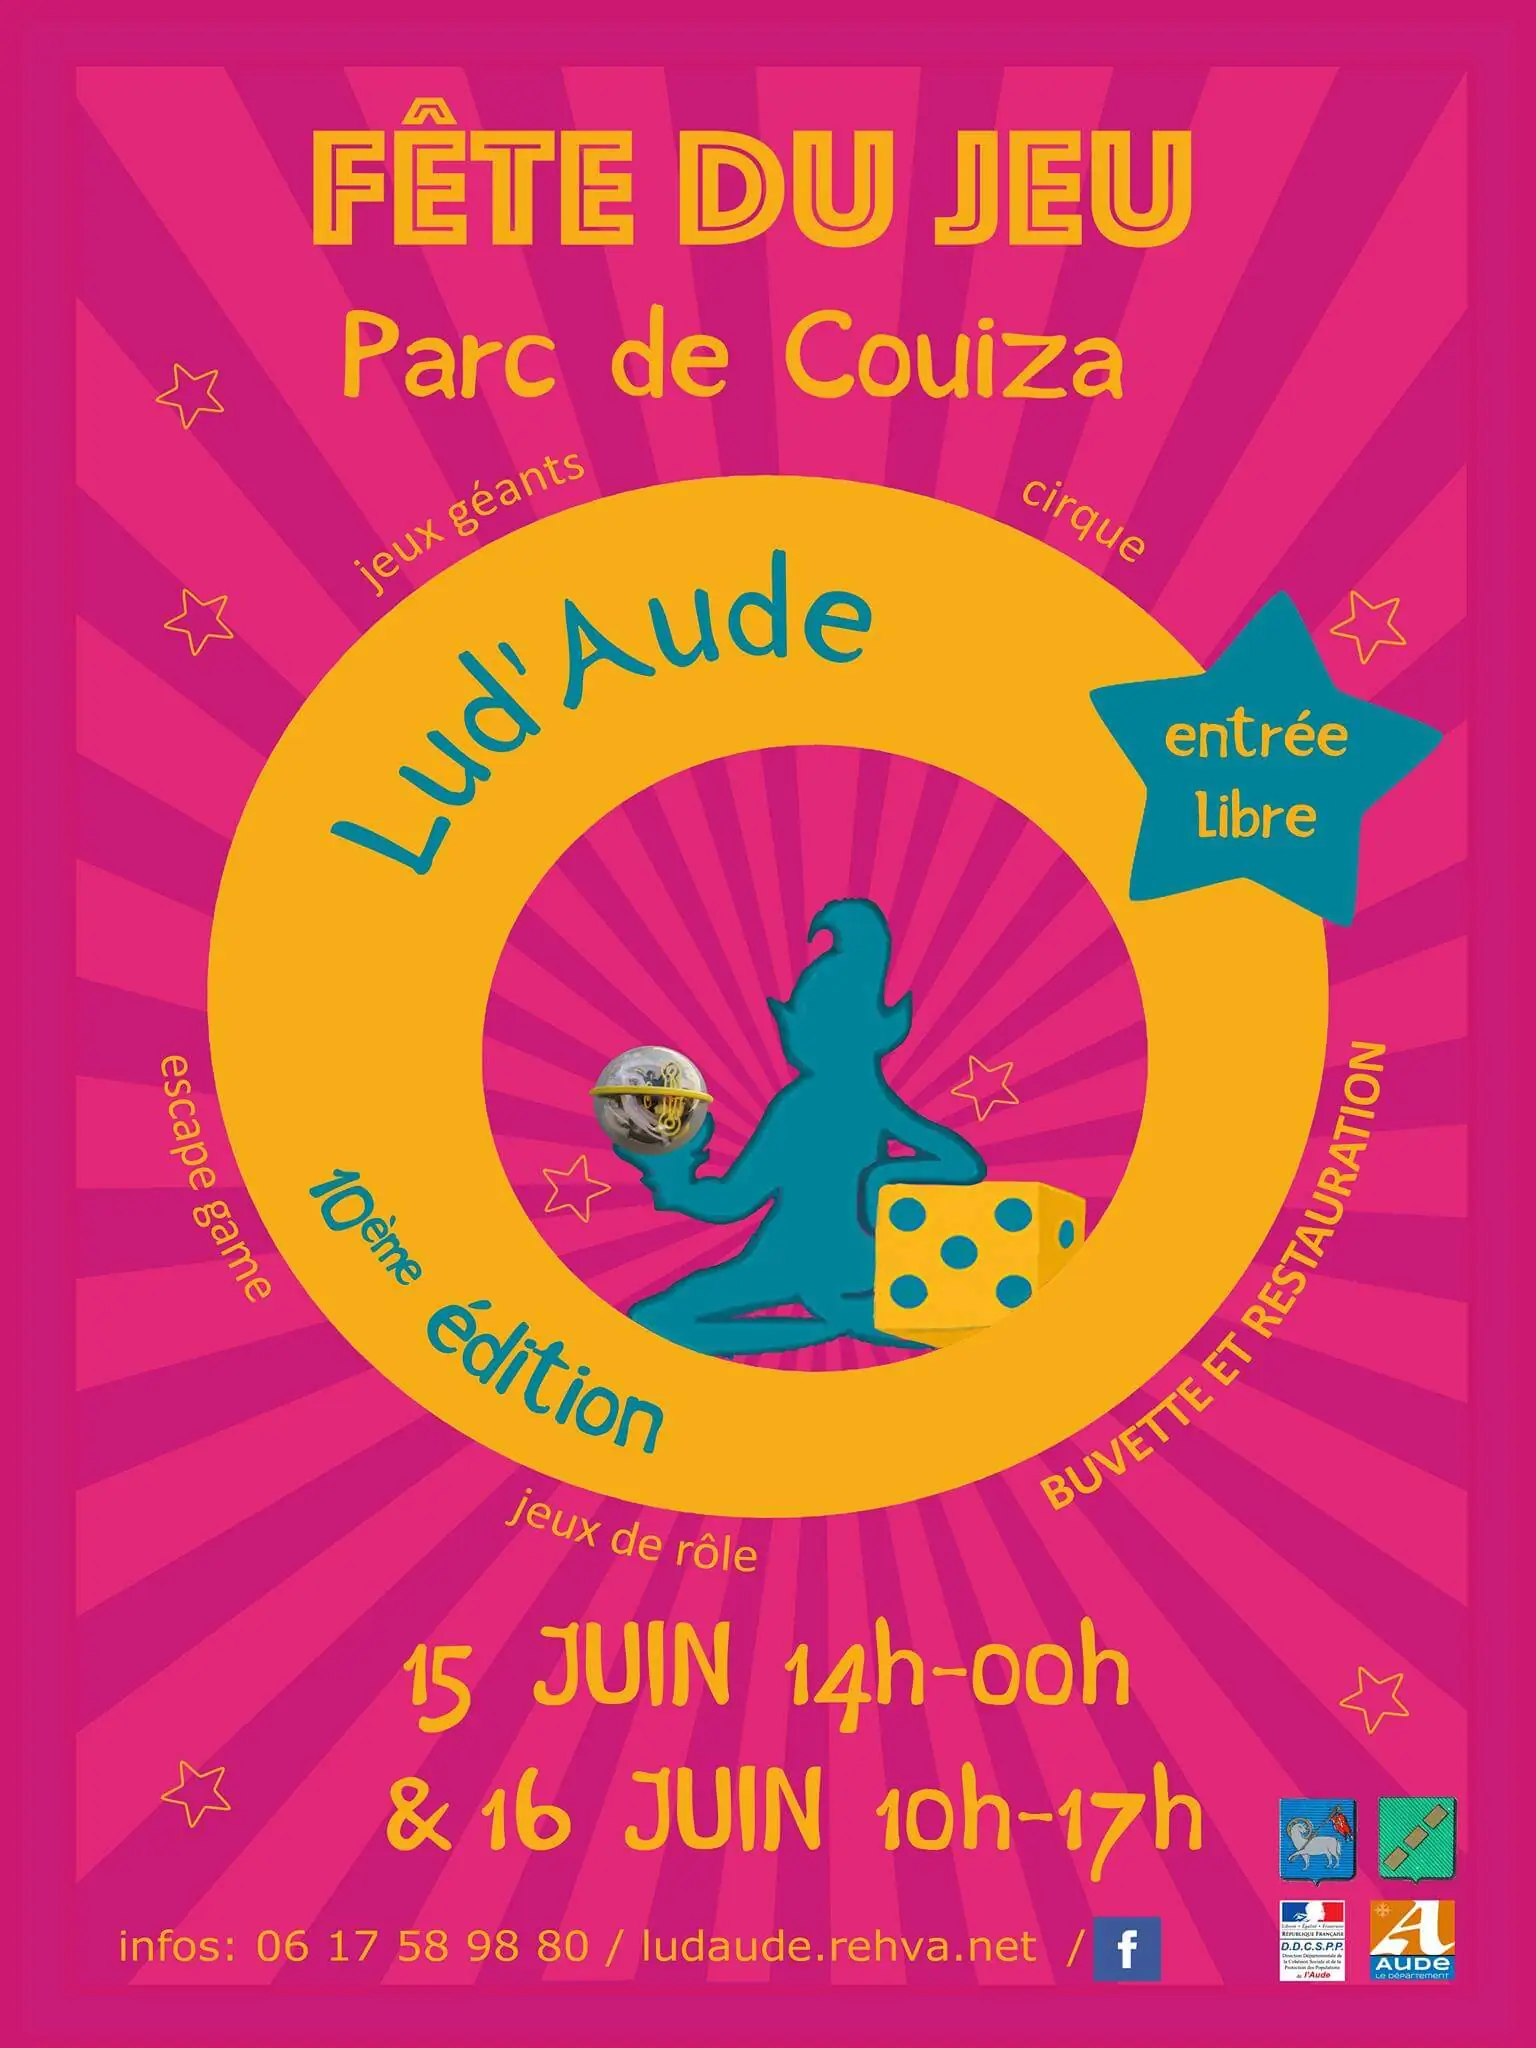 Official poster FÃªte du Jeu de Lud'Aude 2020